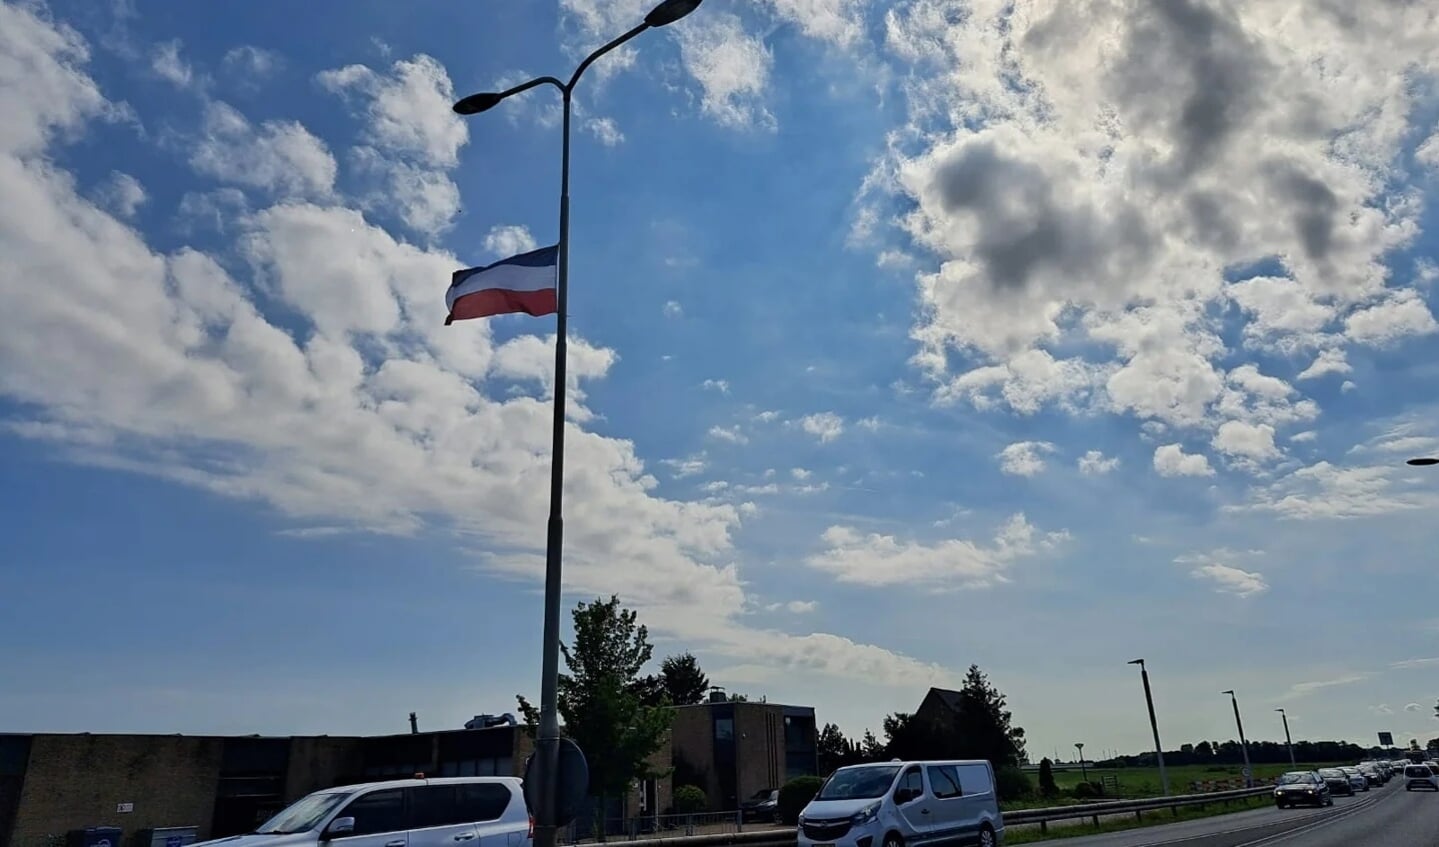 De protestvlaggen vormen volgens de provincie een gevaar voor het verkeer.